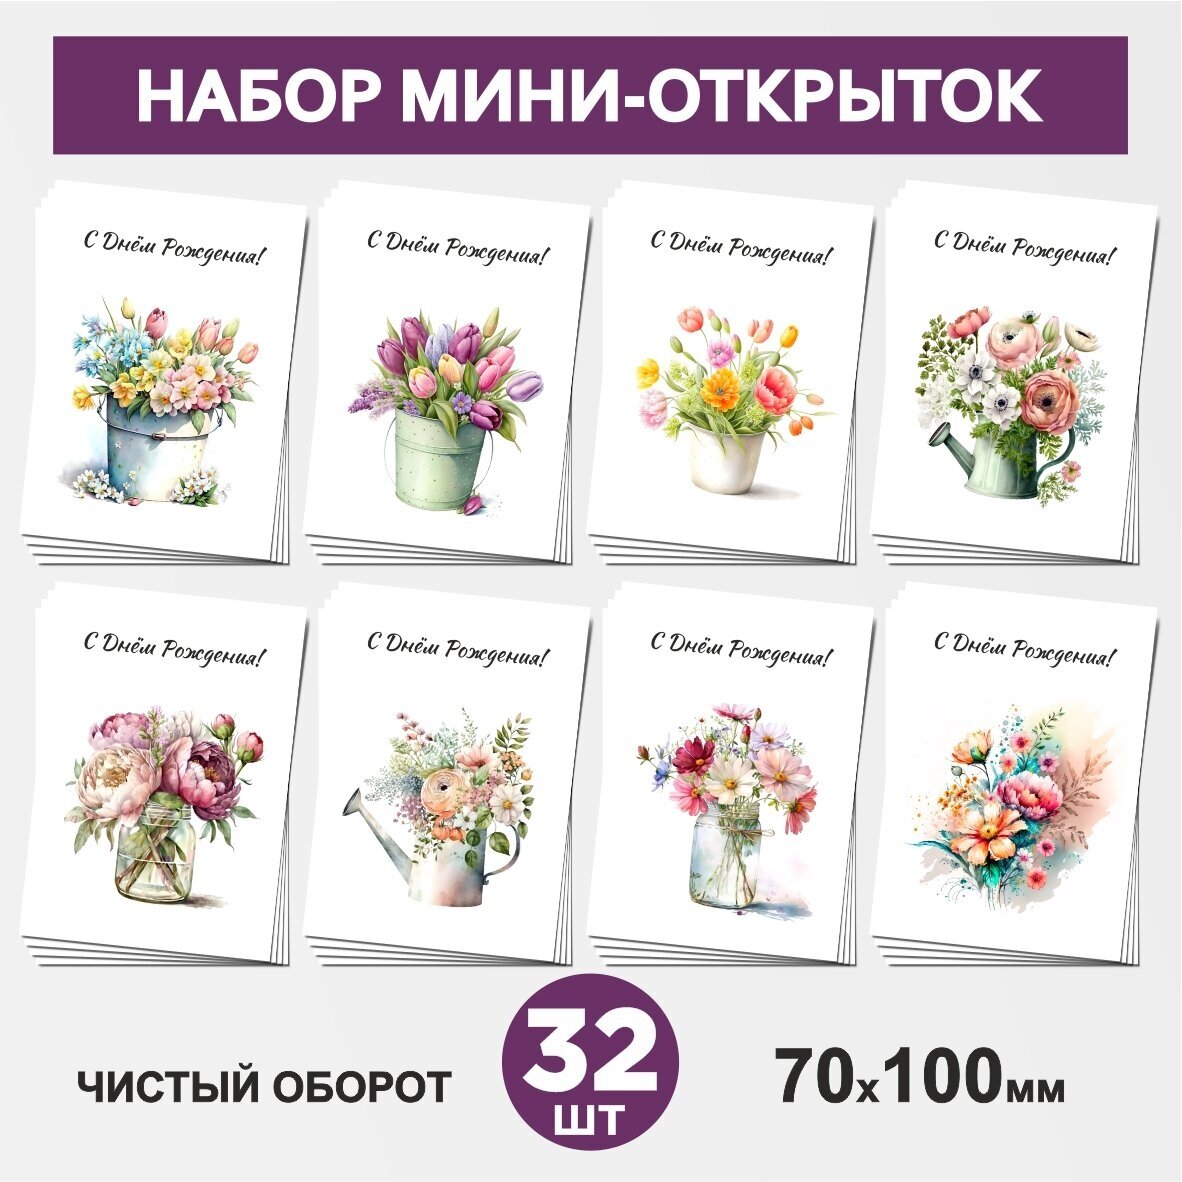 Набор мини-открыток 32 шт, 70х100мм, бирки, карточки, открытки для подарков на День Рождения - Цветы №7.1, postcard_32_flowers_set_7.1